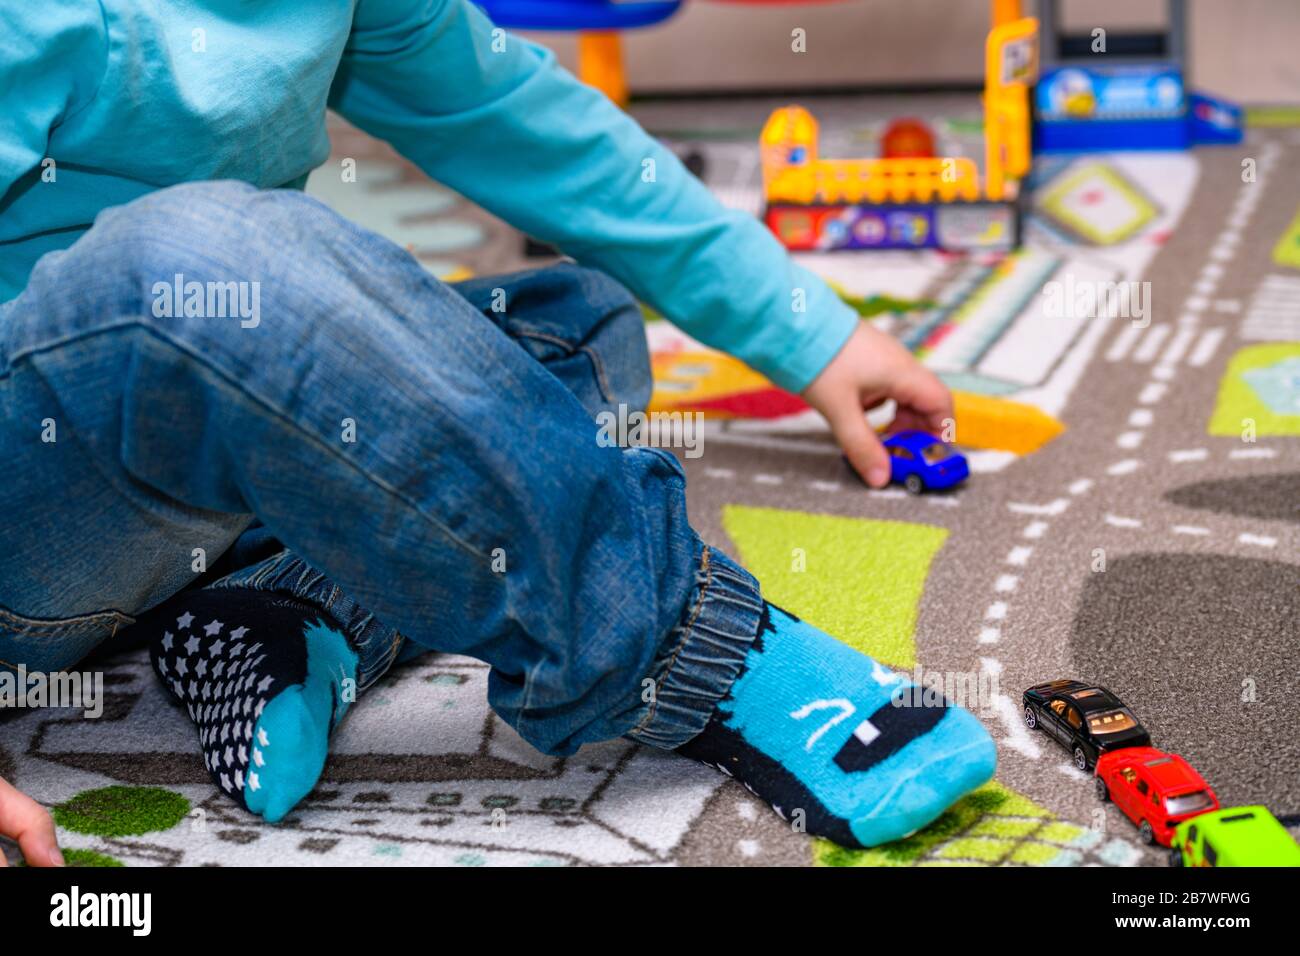 Ragazzo di cinque anni che gioca e allineano le auto giocattolo su un tappetino da gioco con le strade. Il ragazzo è vestito con jeans blu e una camicia turchese. Foto Stock